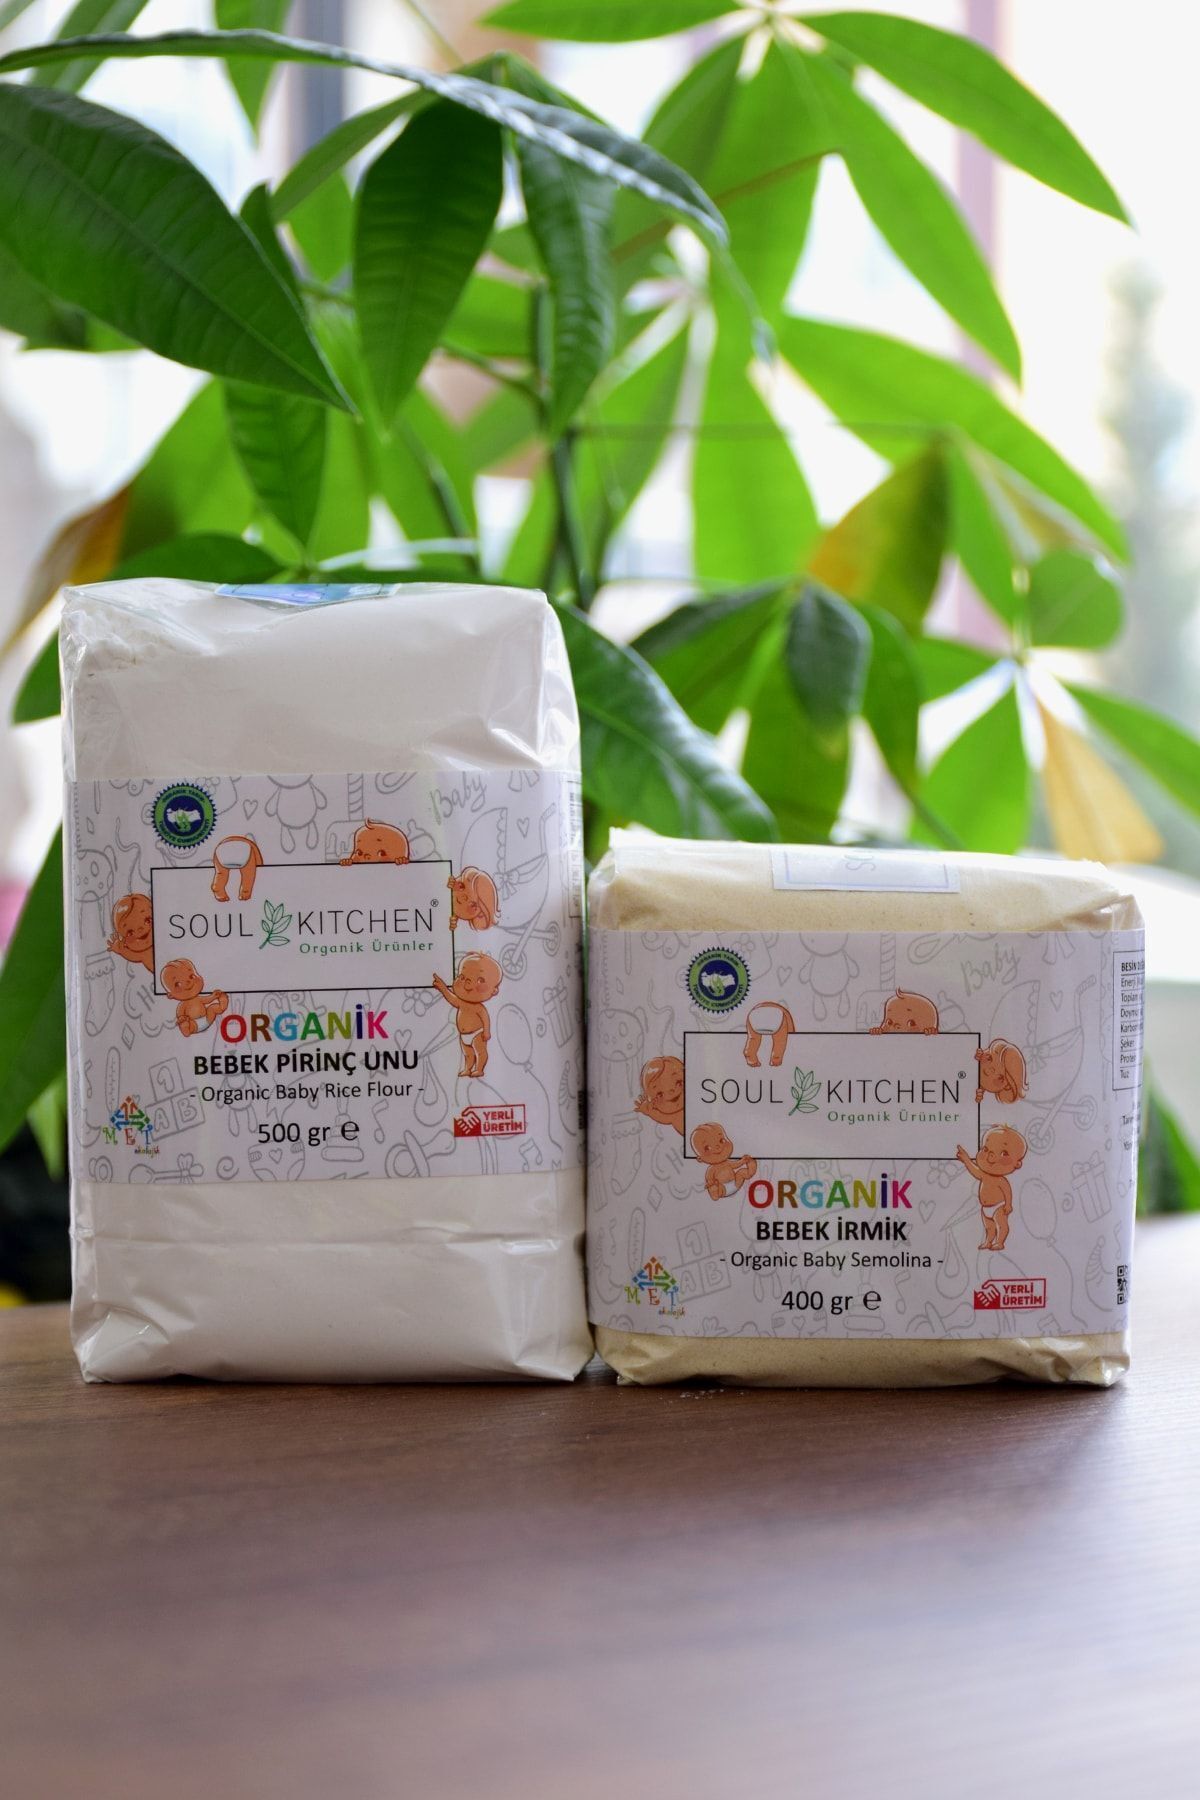 Soul Kitchen Organik Ürünler Organik Bebek Irmiği 400gr - Organik Bebek Pirinç Unu 500gr Avantaj Paket